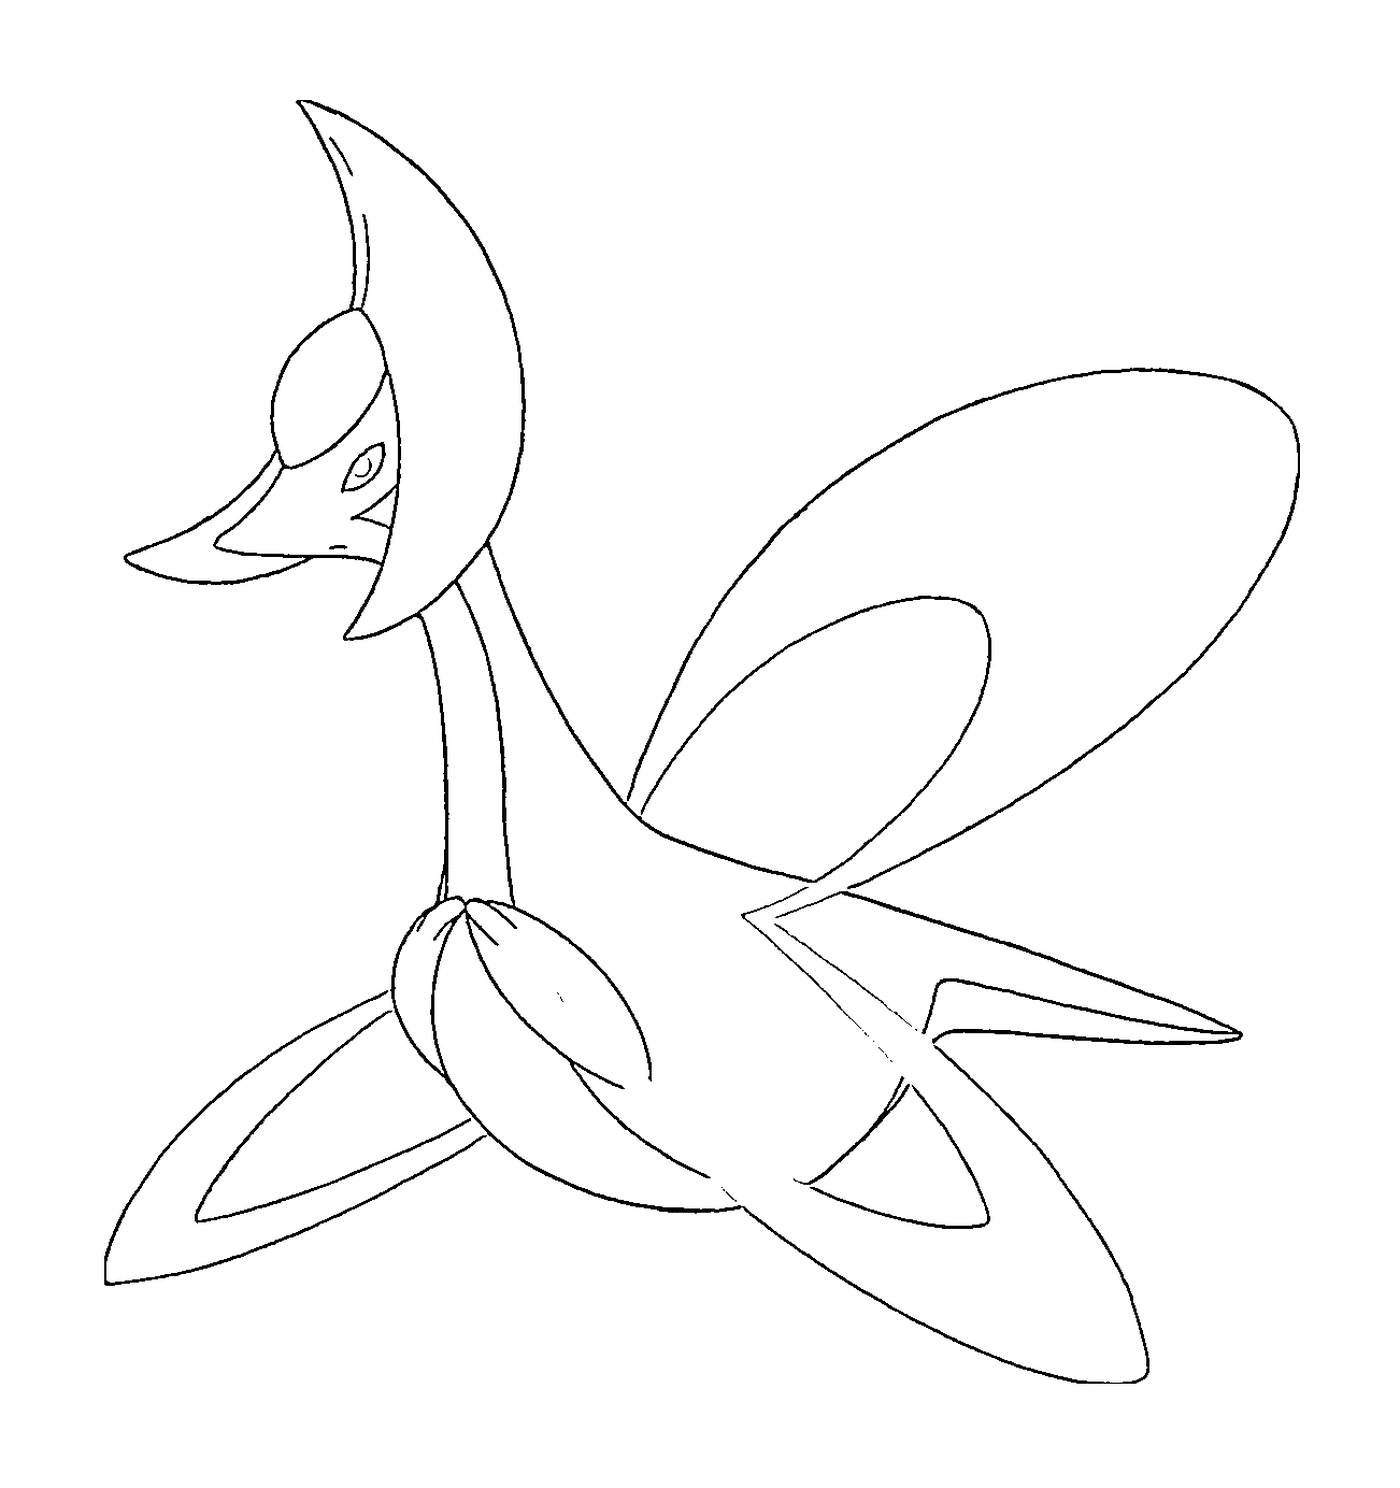  Crasselia Vogel mit langem Schwanz 